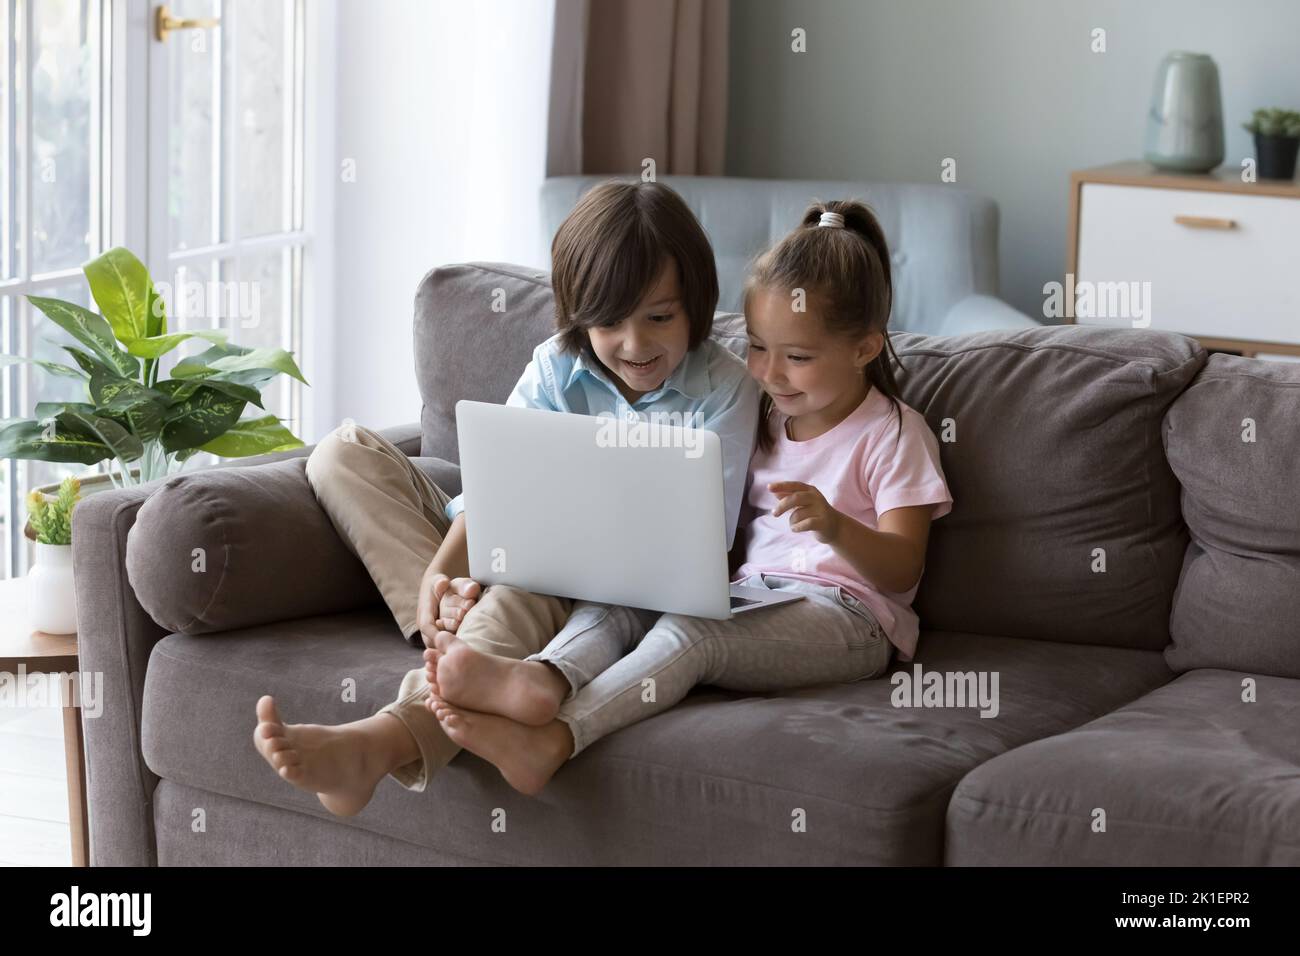 Deux enfants de la génération Z utilisant l'application d'apprentissage en ligne sur un ordinateur portable Banque D'Images